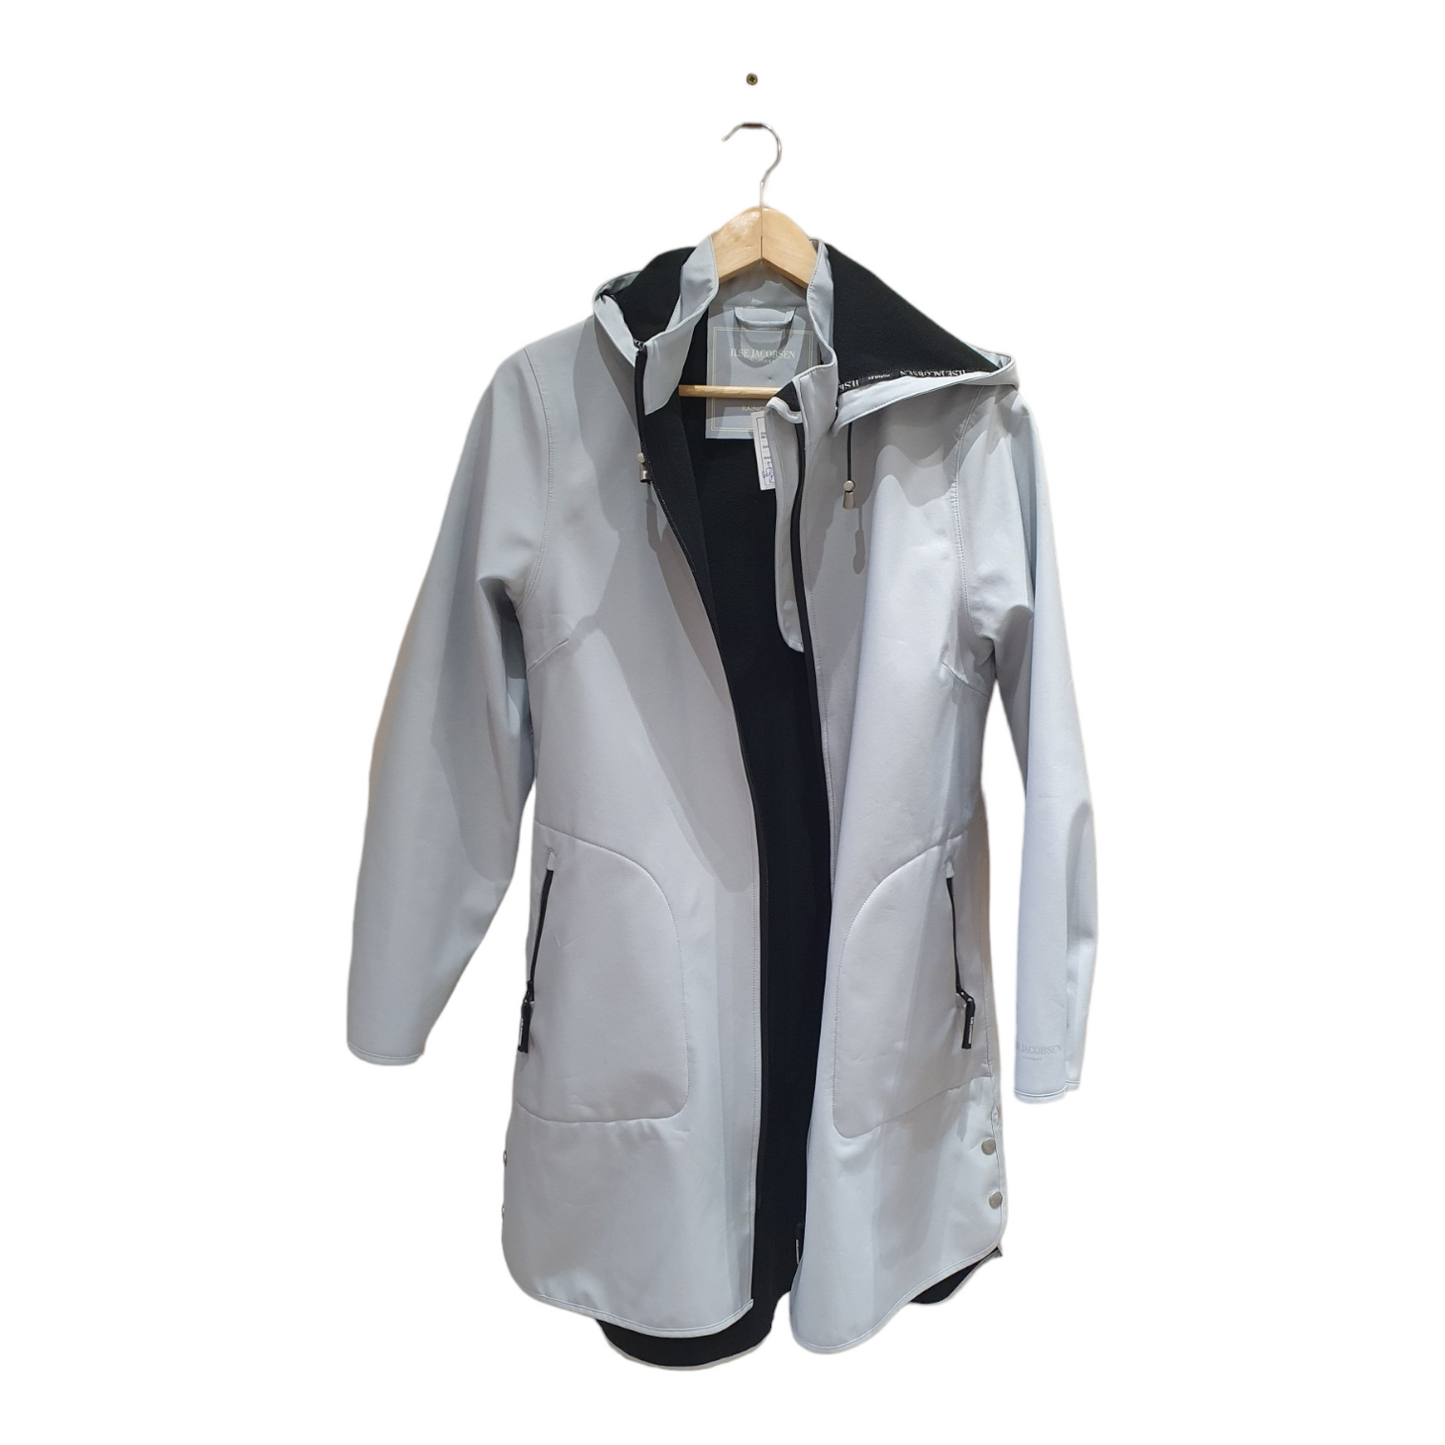 Ilse Jacobsen Pale blue raincoat, size 10